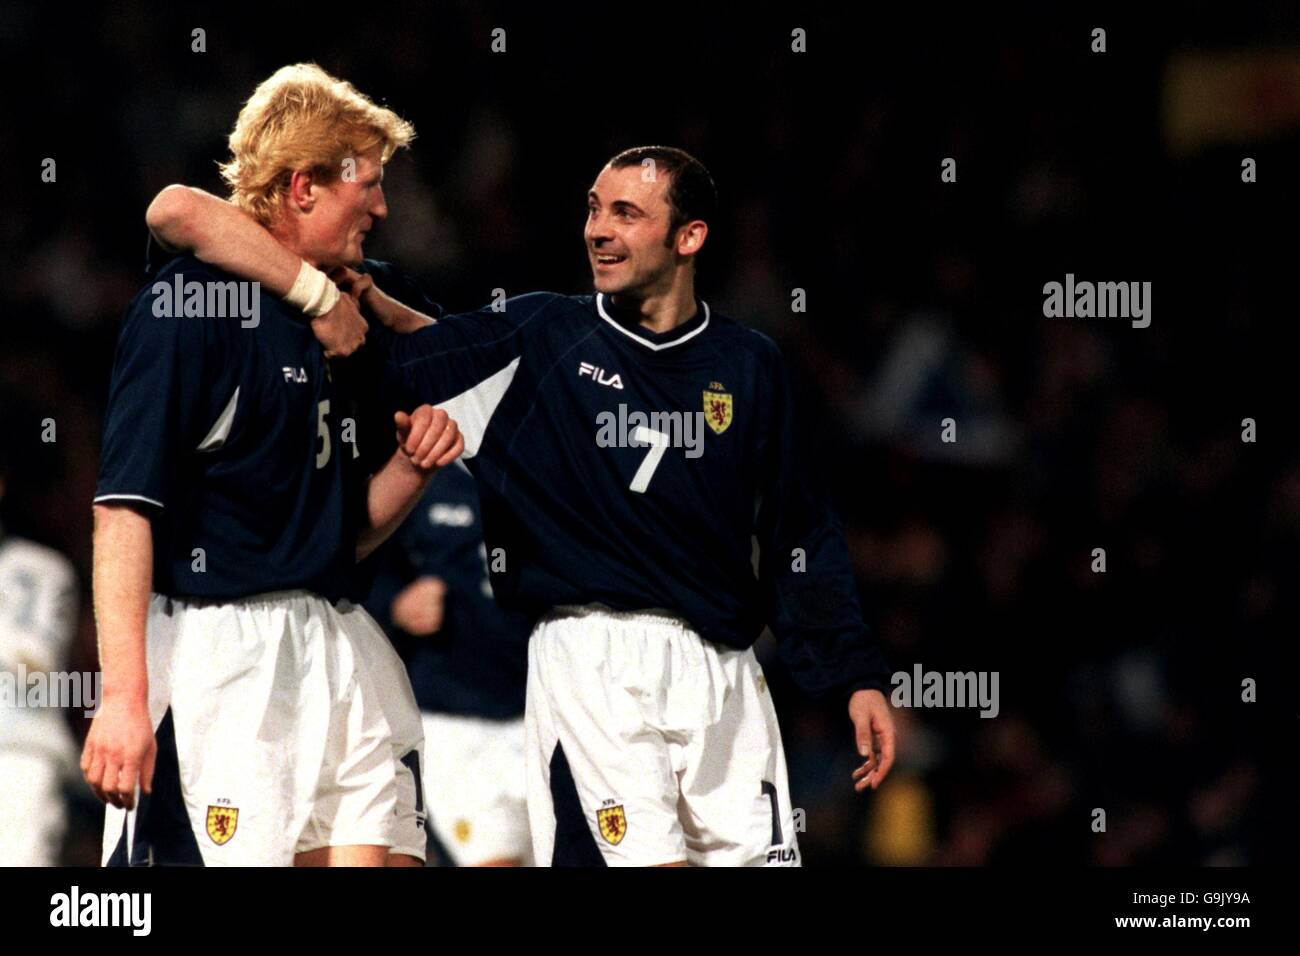 Calcio - Coppa del mondo 2002 qualificatore - Gruppo sei - Scozia / San Marino. Colin Hendry il capitano scozzese si congratula con Colin Cameron dopo aver segnato il secondo gol Foto Stock